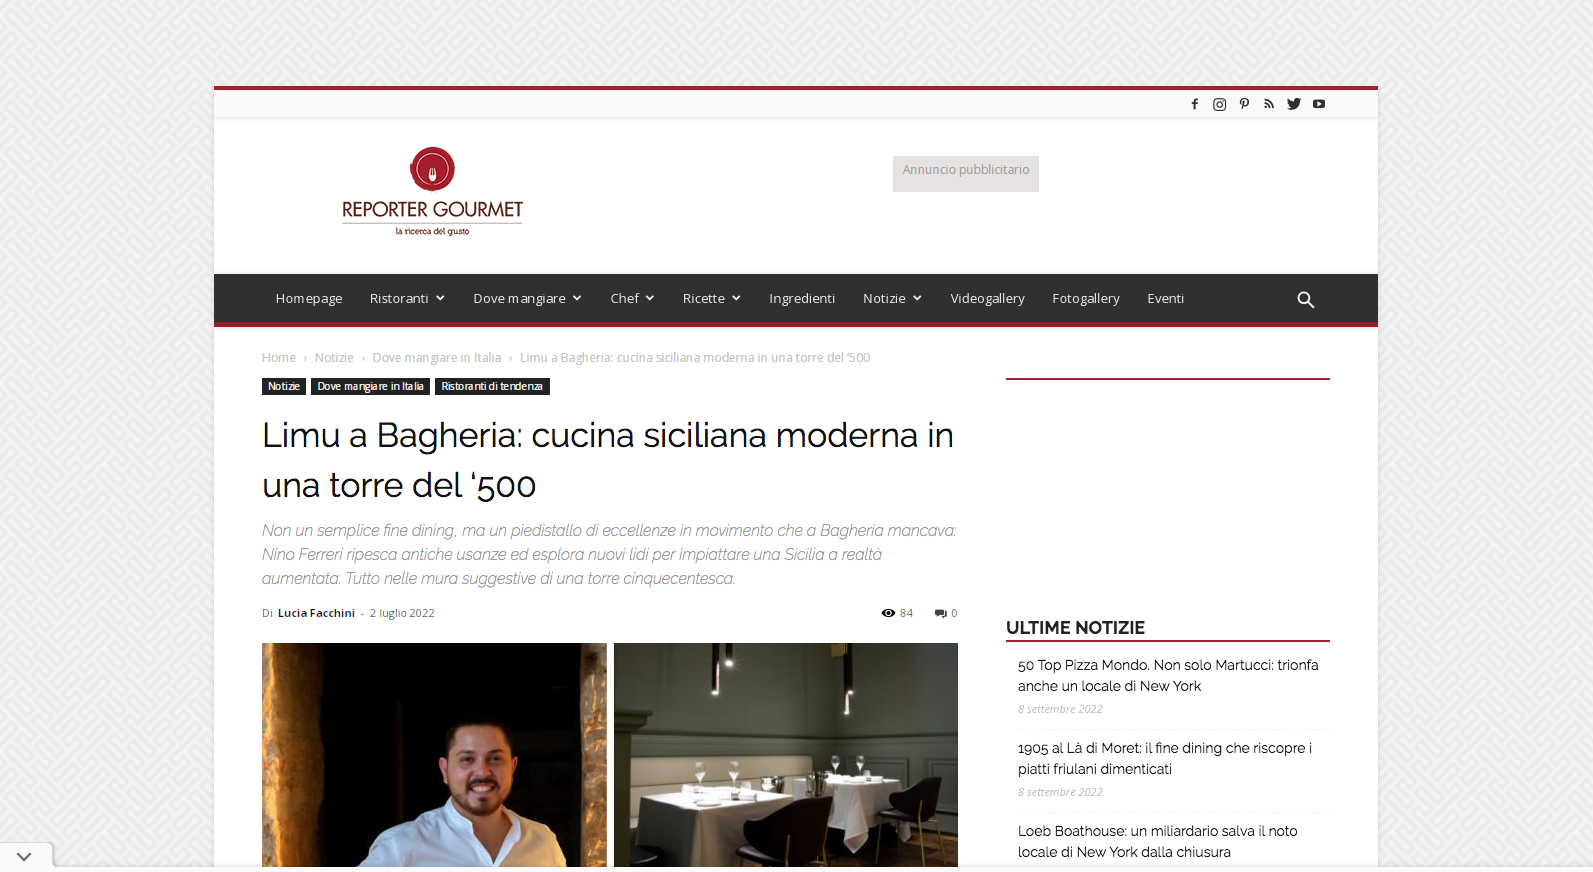 Limu a Bagheria: cucina siciliana moderna in una torre del ‘500